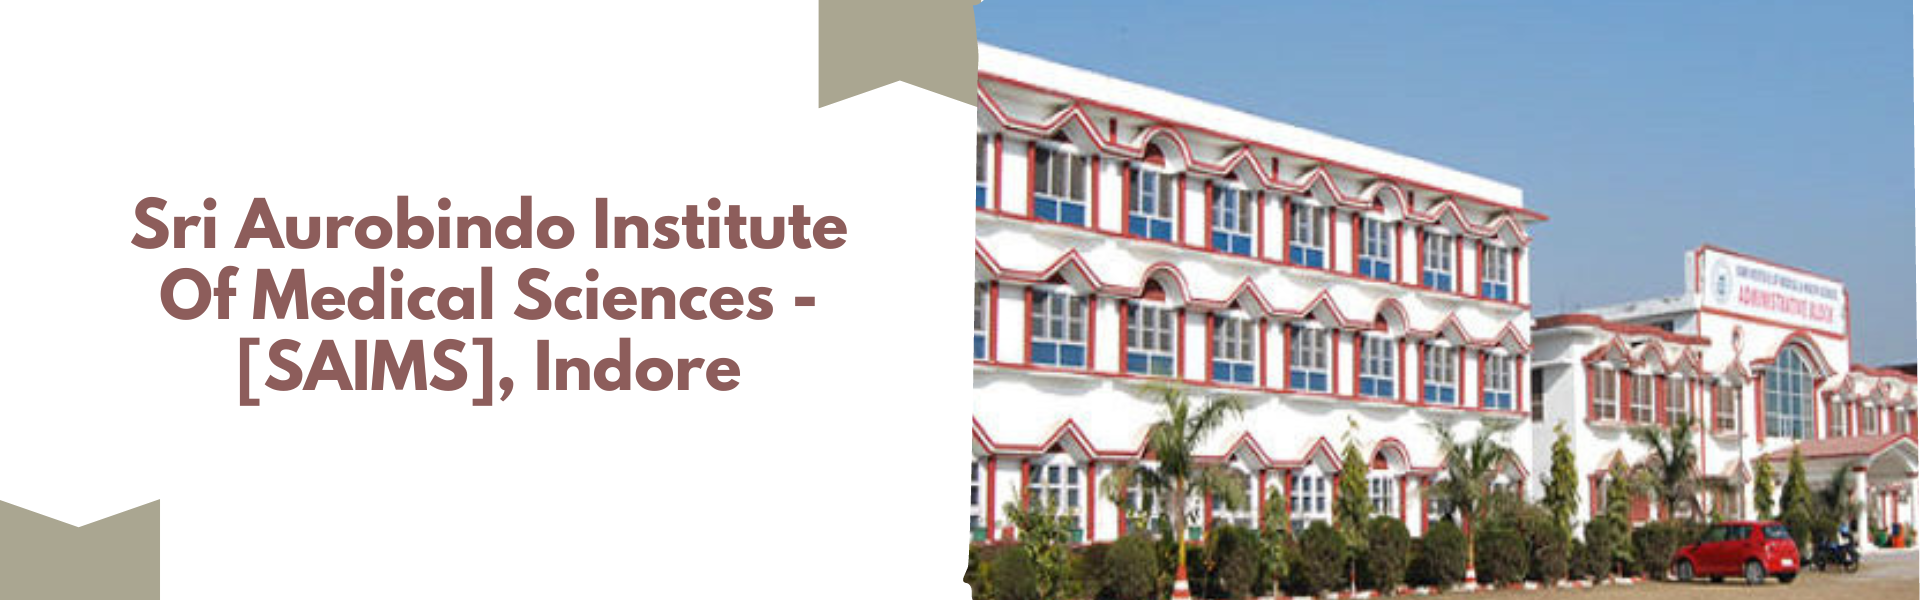 Sri Aurobindo Institute Of Medical Sciences - [SAIMS], Indore